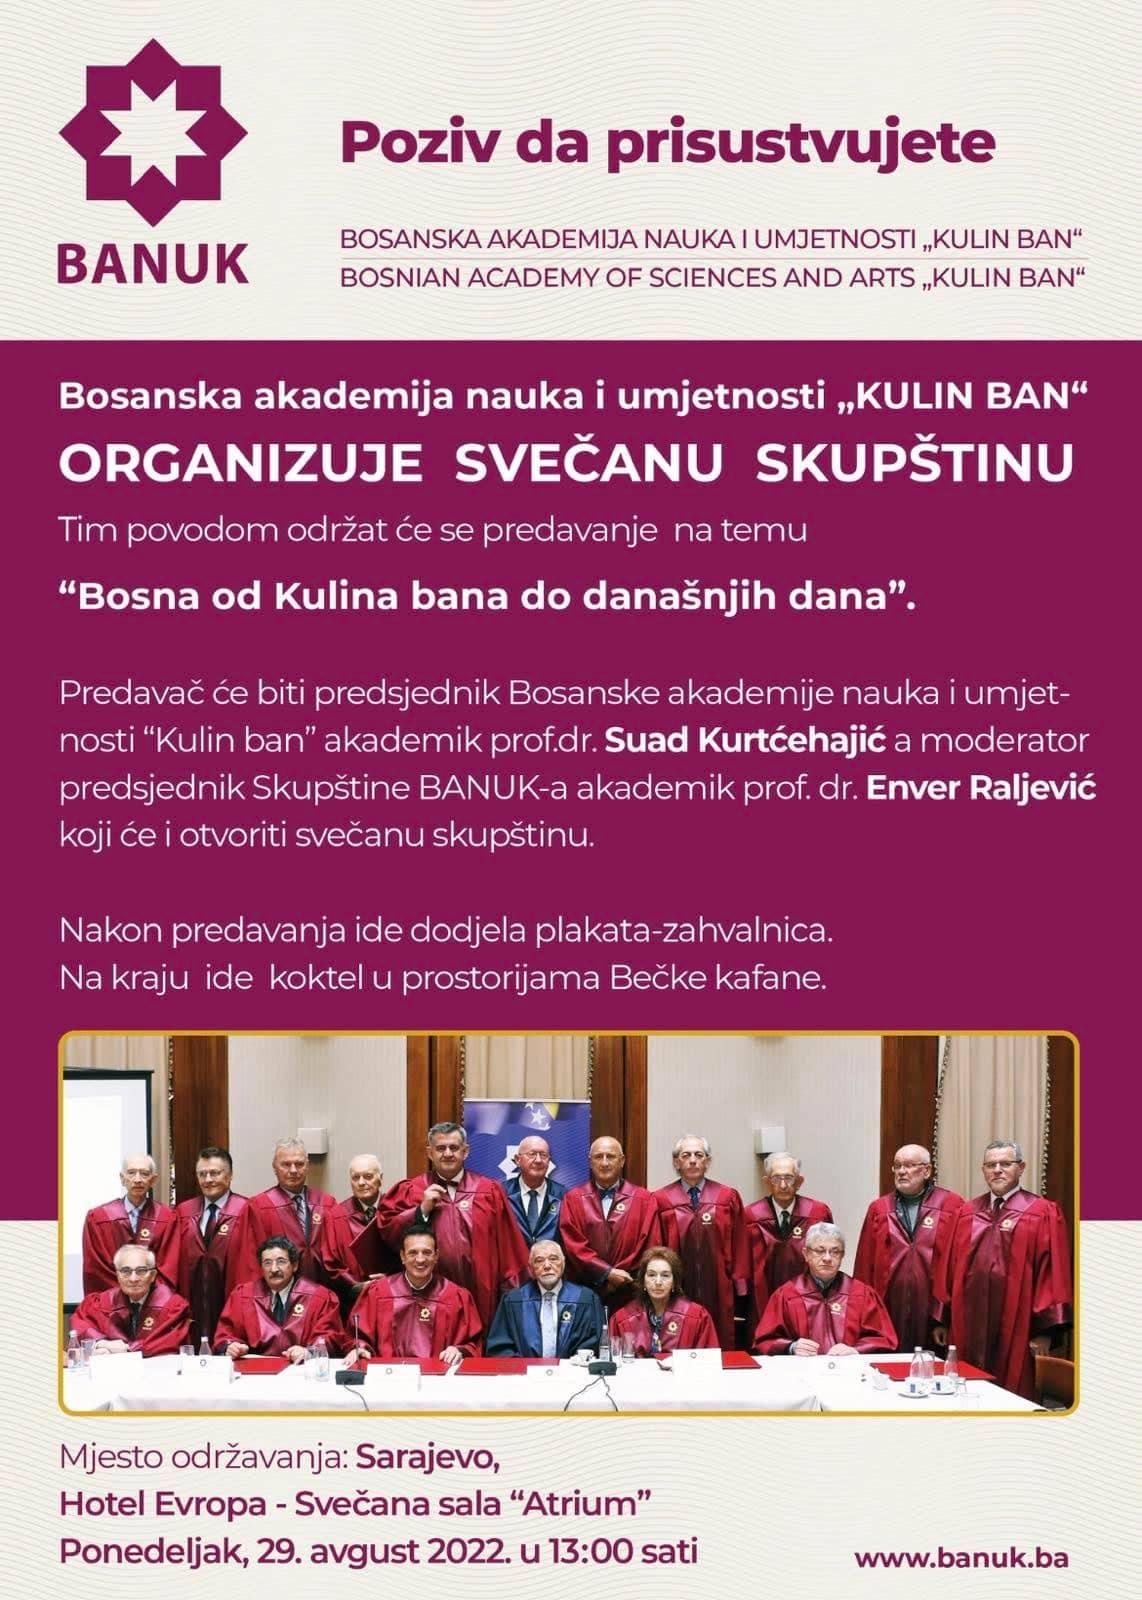 BANUK organizira svečanu skupštinu: Predavač je akademik Kurtćehajić, a moderator Raljević